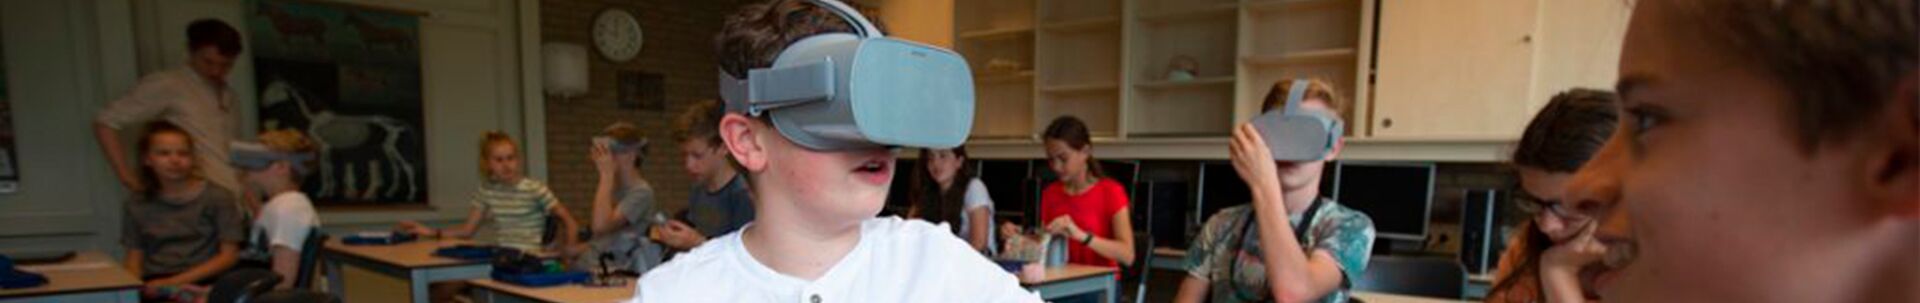 8 лучших примеров применения VR/AR в образовании